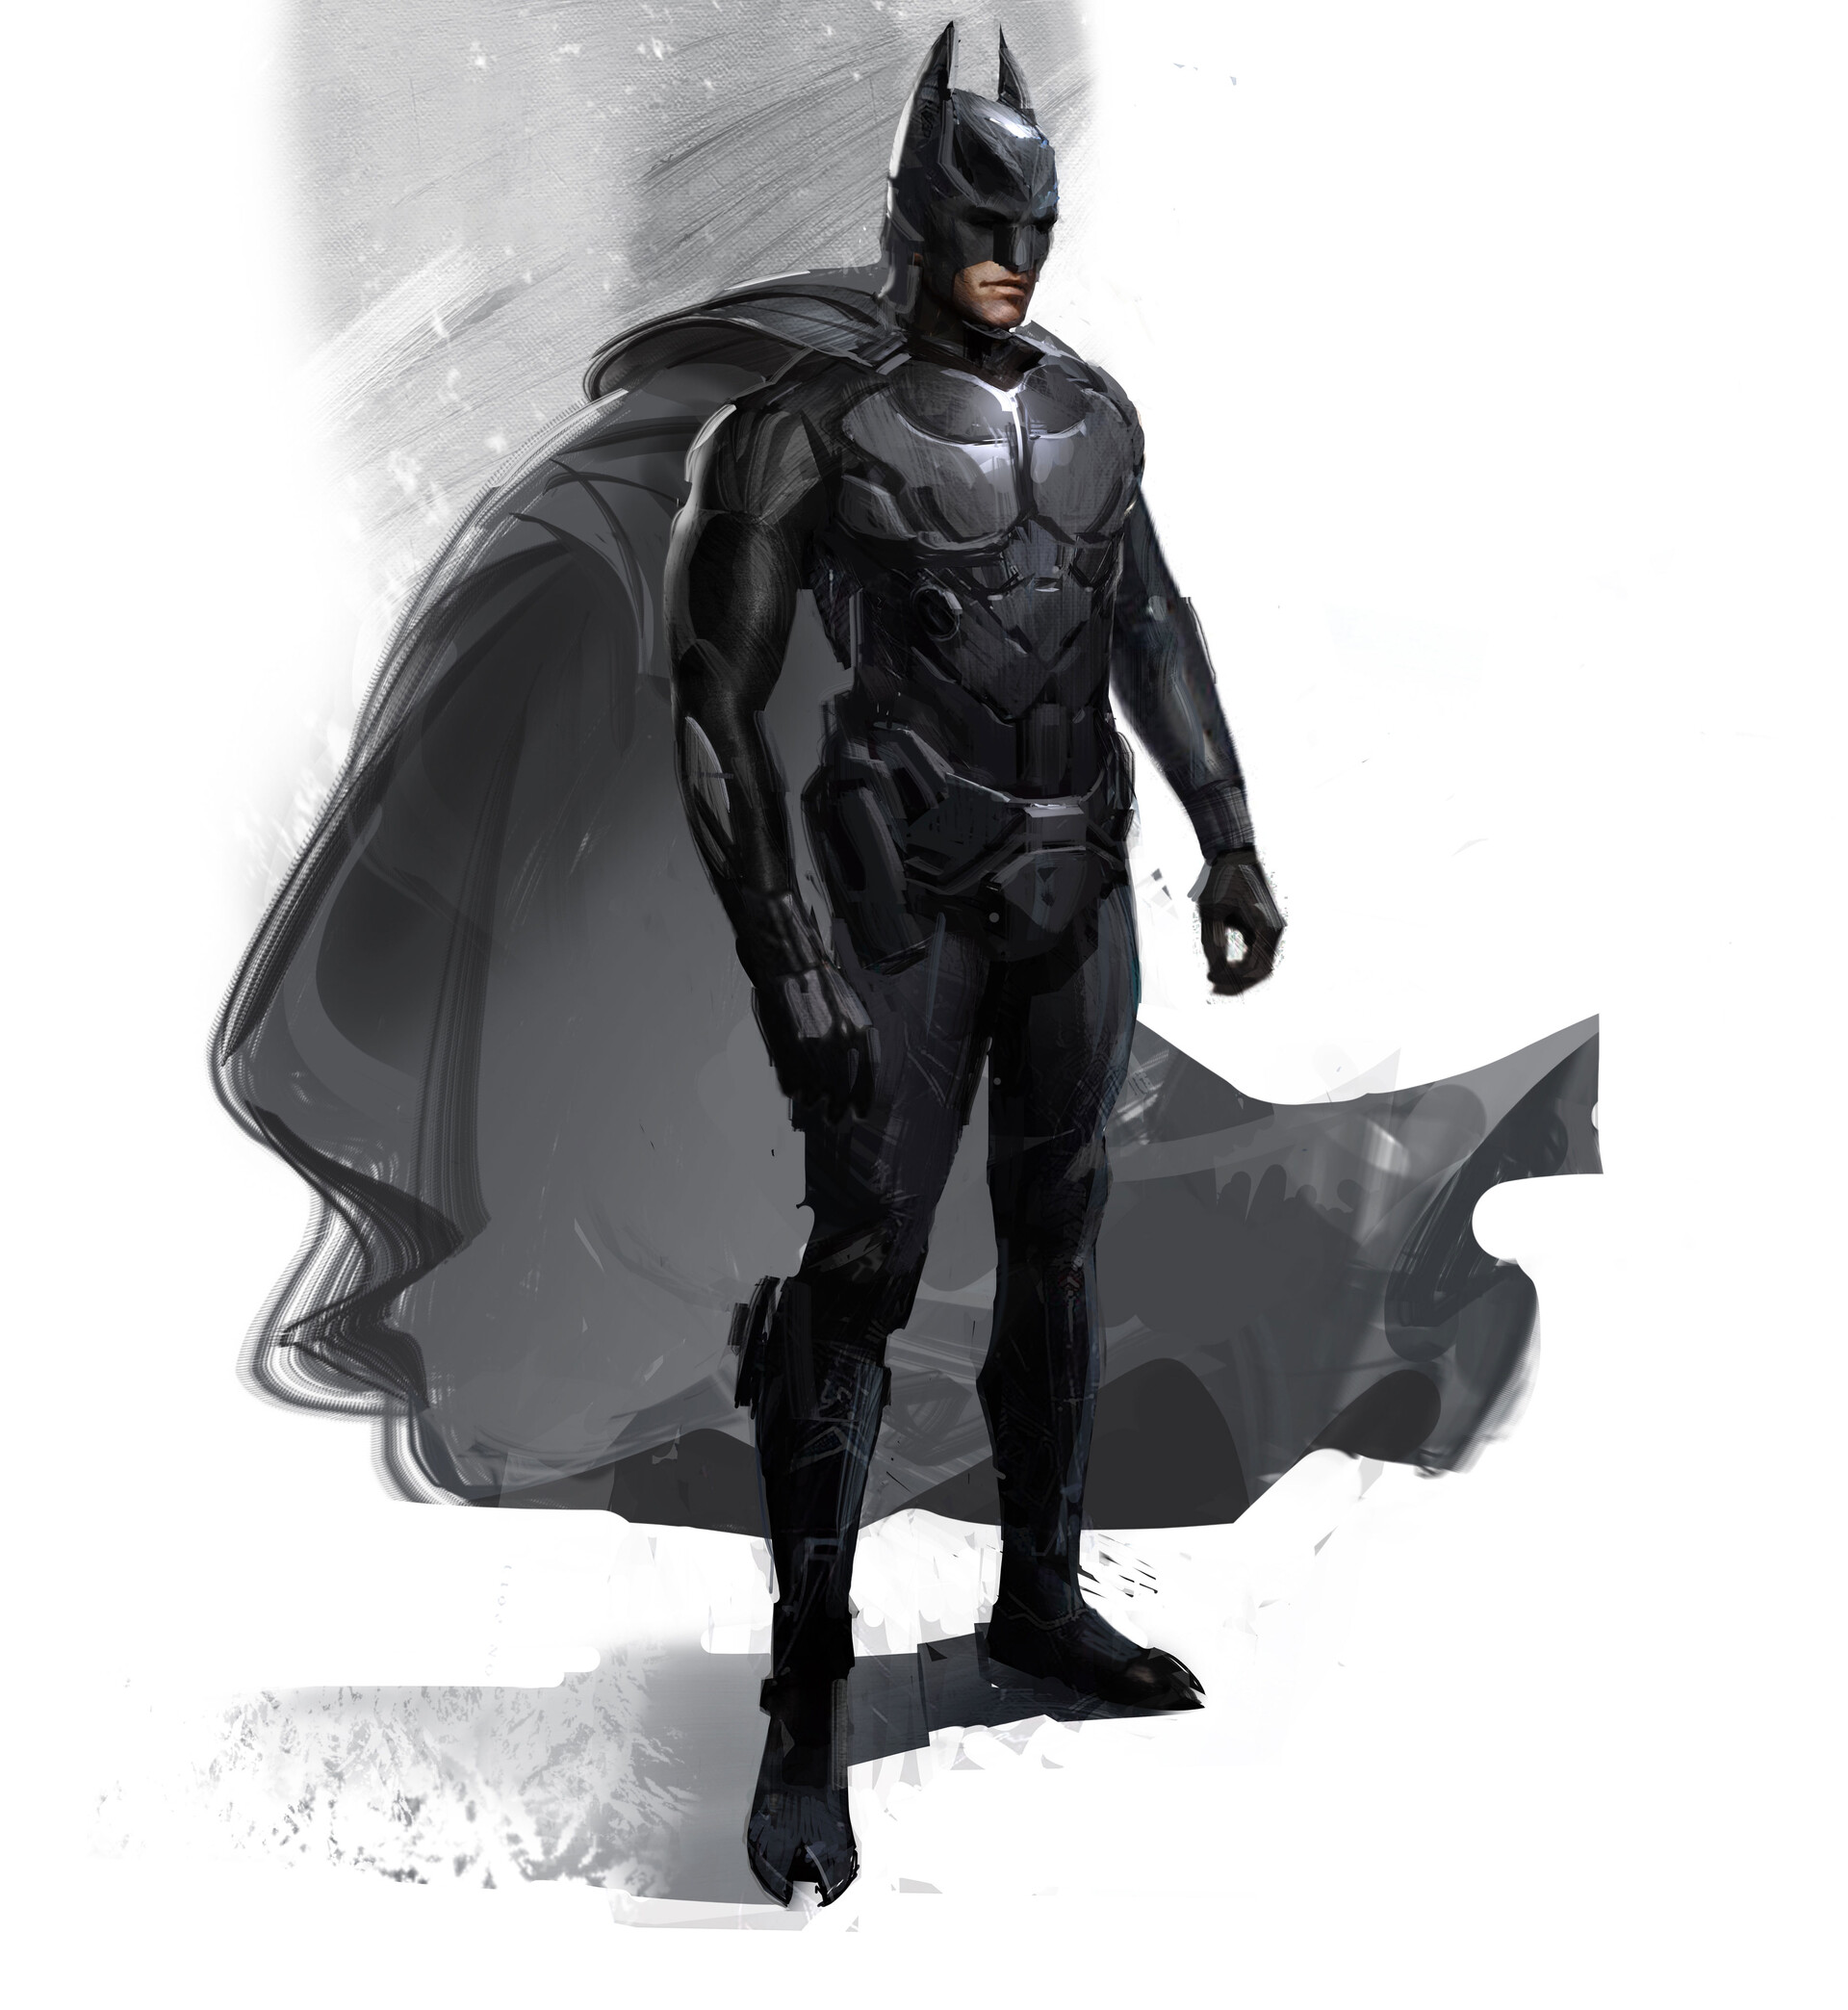 Des concept arts pour une suite avortée de Batman: Arkham Knight font surfa...